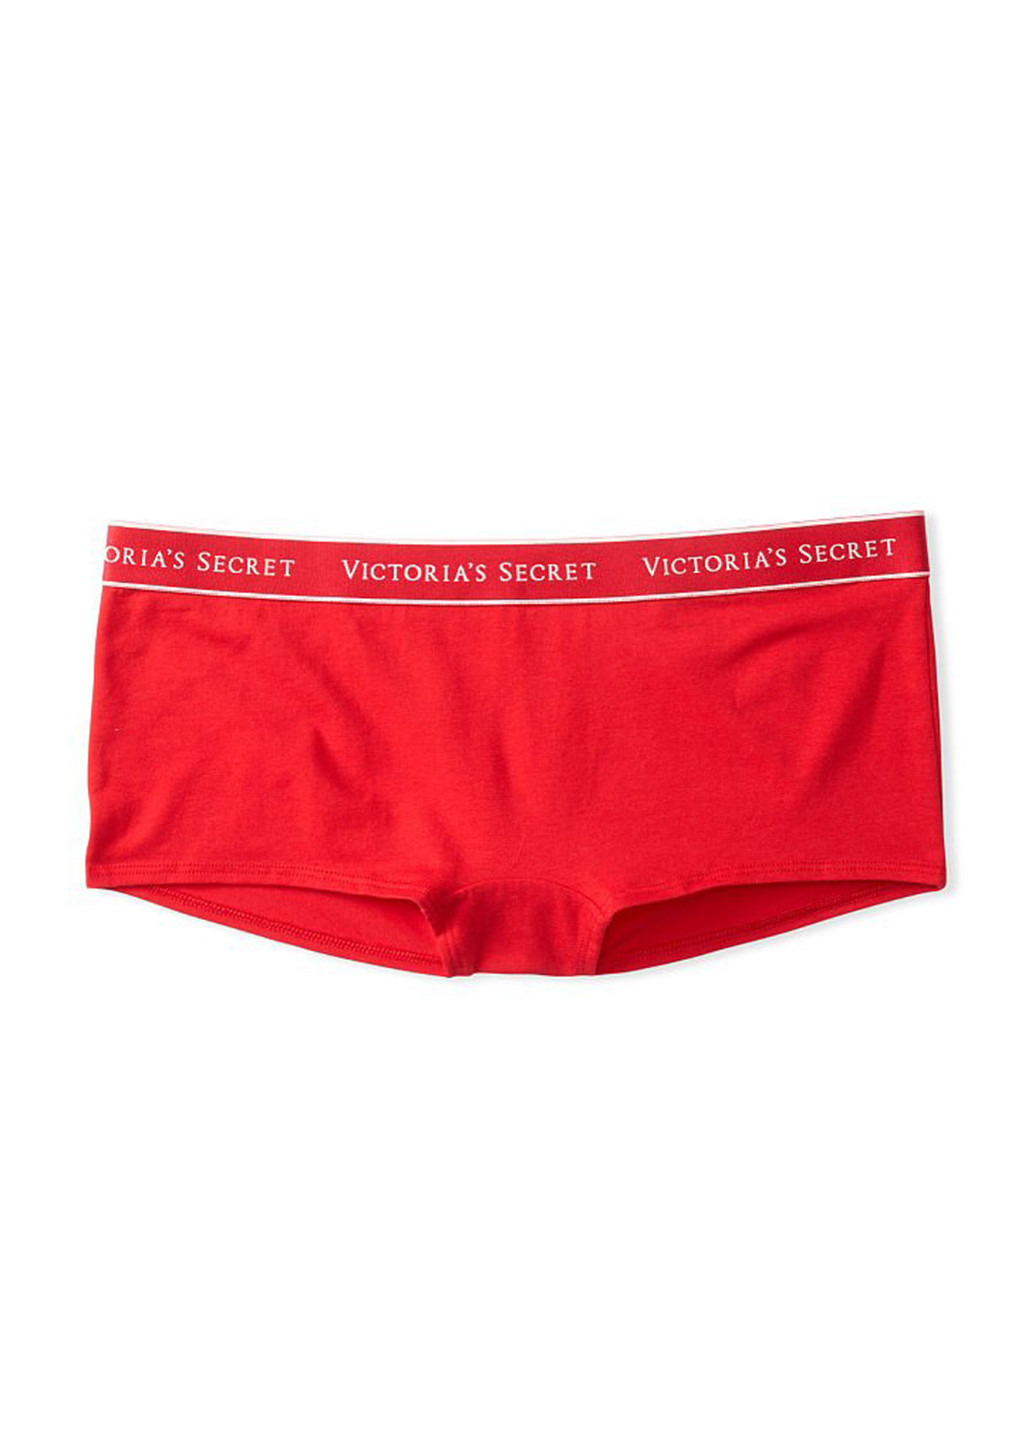 Трусики Victoria's Secret трусики-шорты надписи красные домашние трикотаж, хлопок